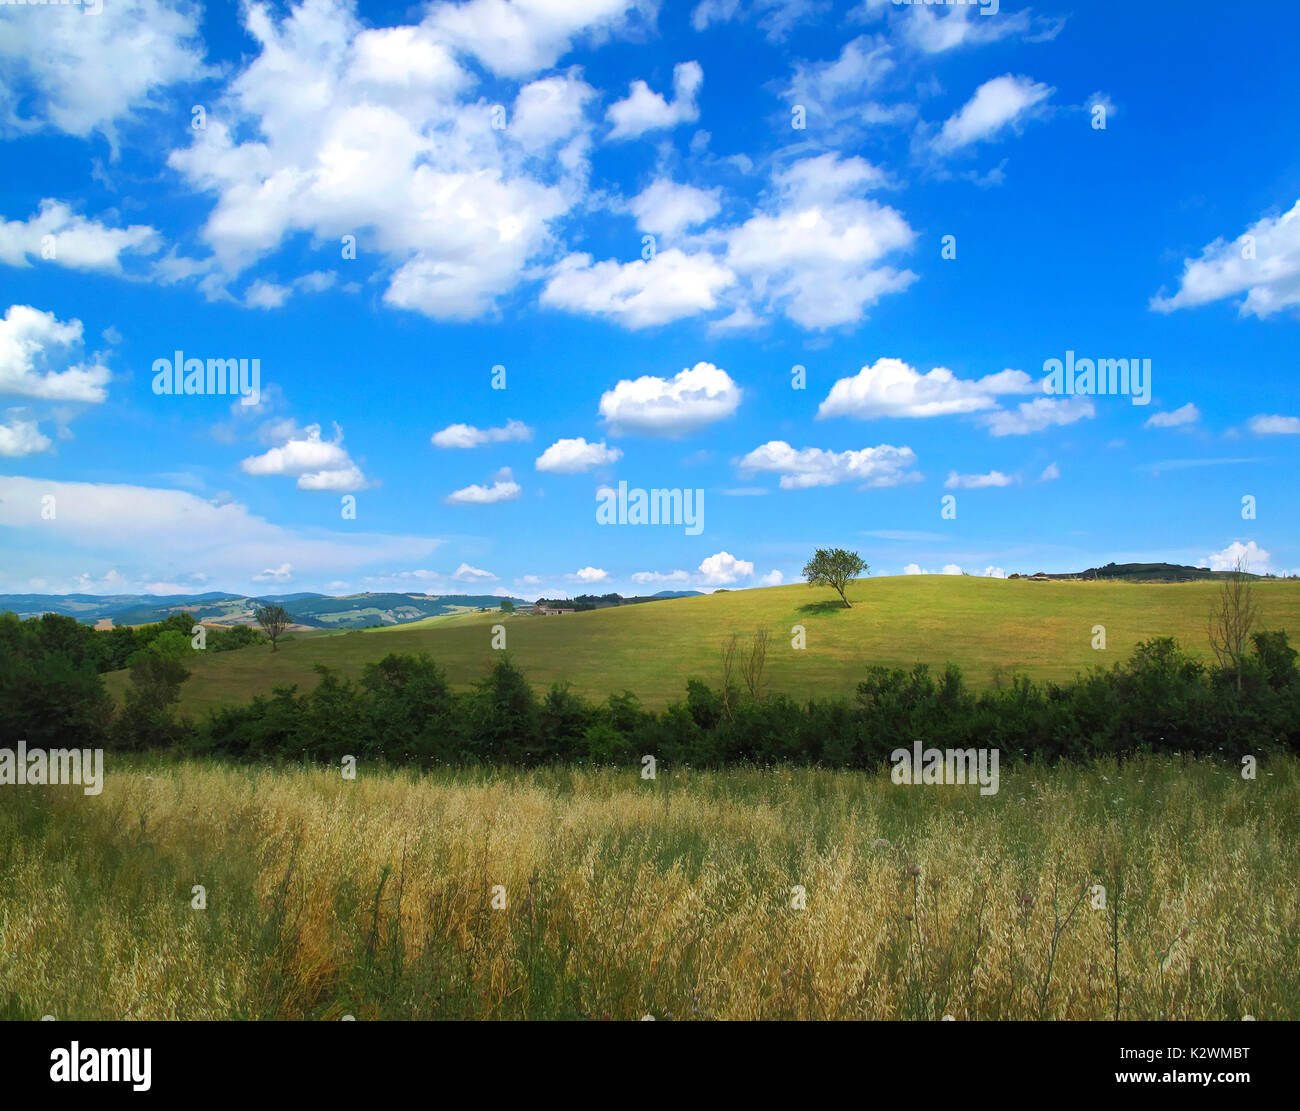 Hermoso paisaje de la Toscana con un árbol en medio de la hinchada nubes blancas en la cima de una colina, la luz de la mañana establece esta escena con ricos colores saturados Foto de stock